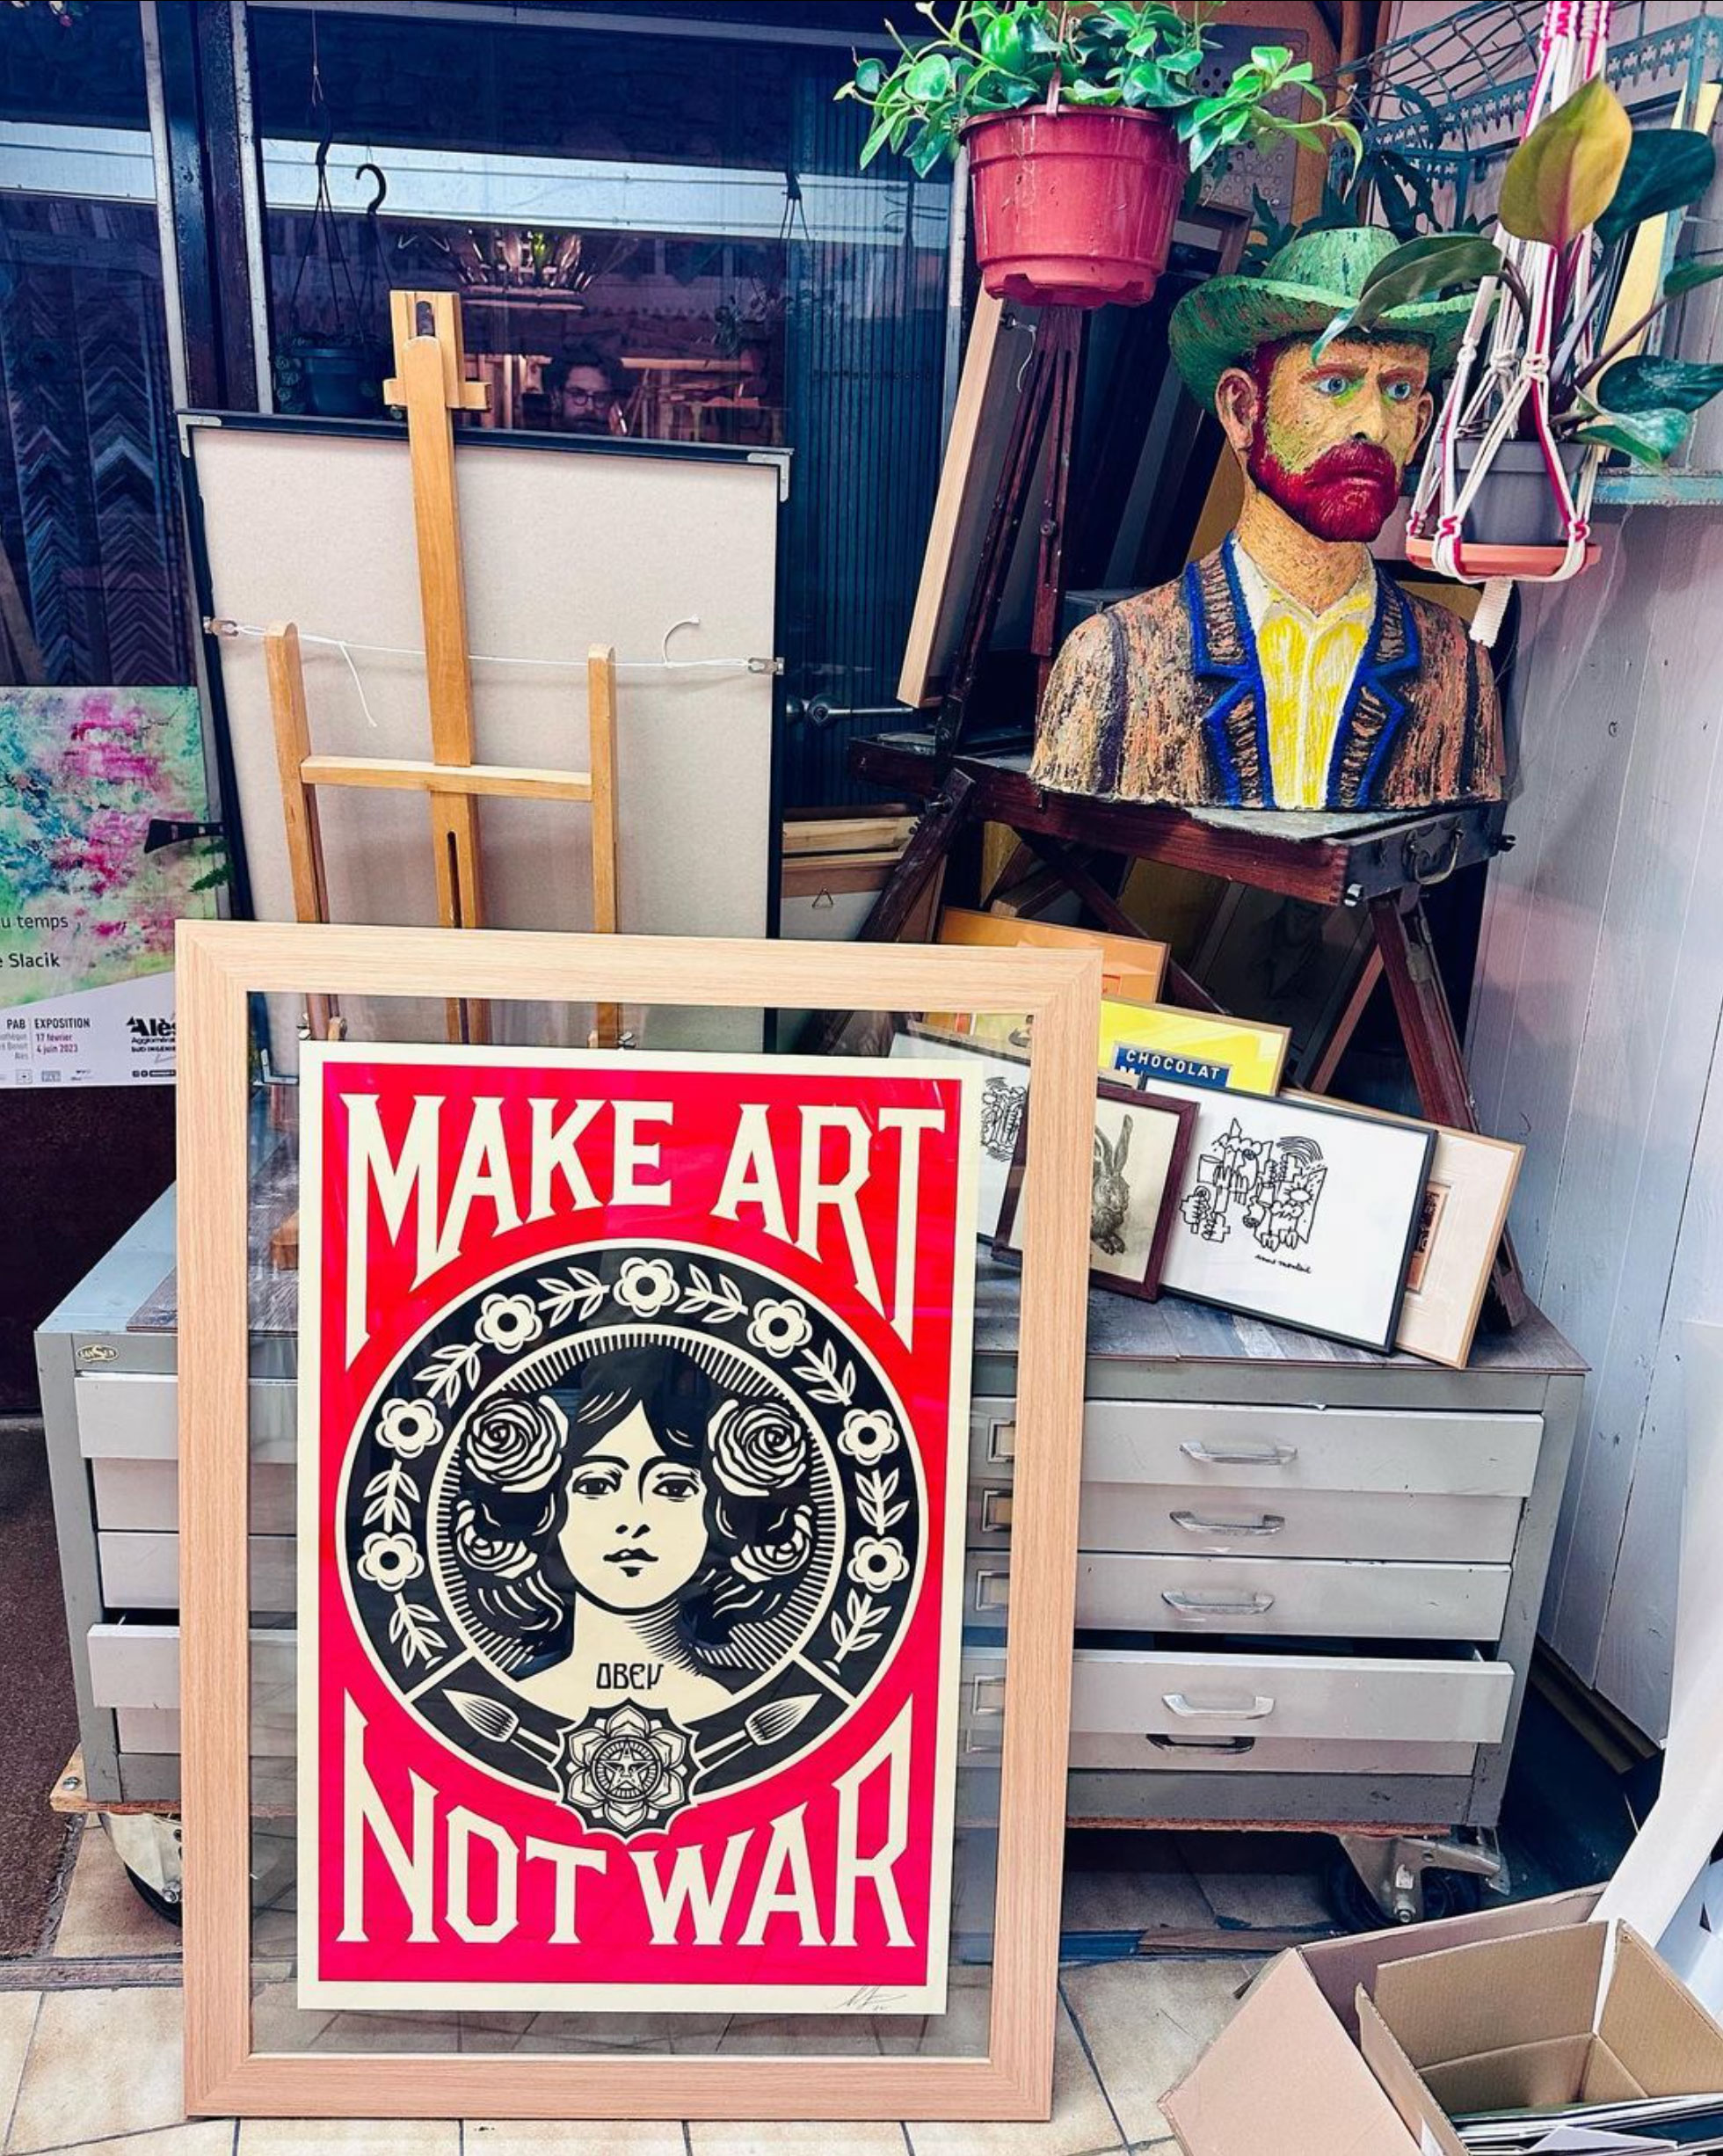 MAKE-ART-NOT-WAR